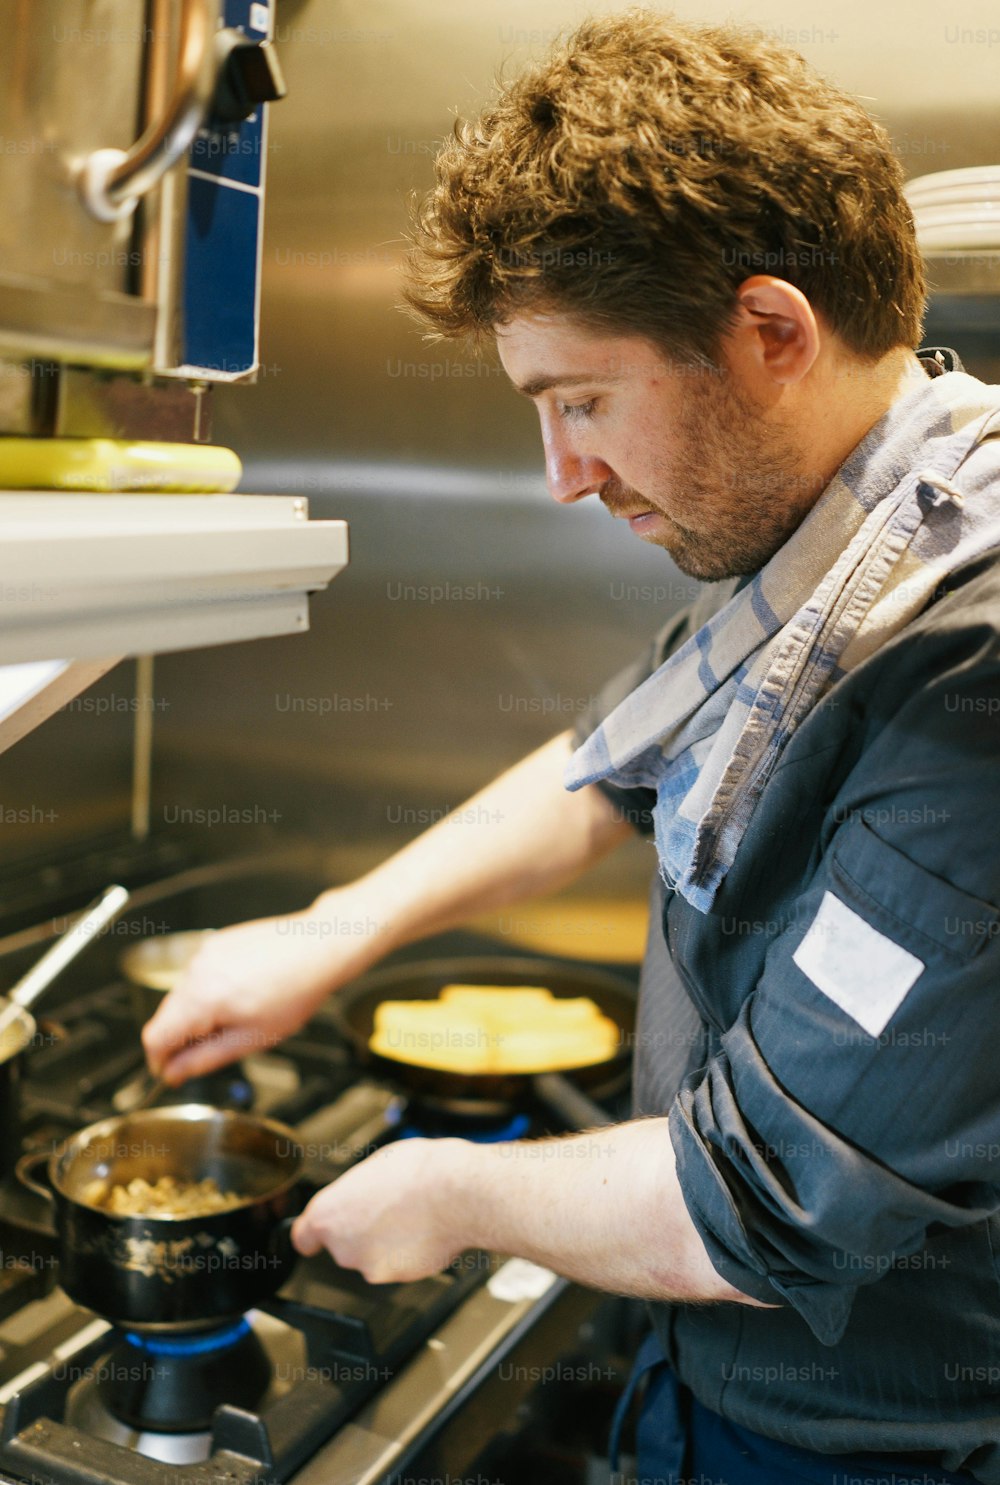 Ein Mann kocht Essen auf einem Herd in einer Küche